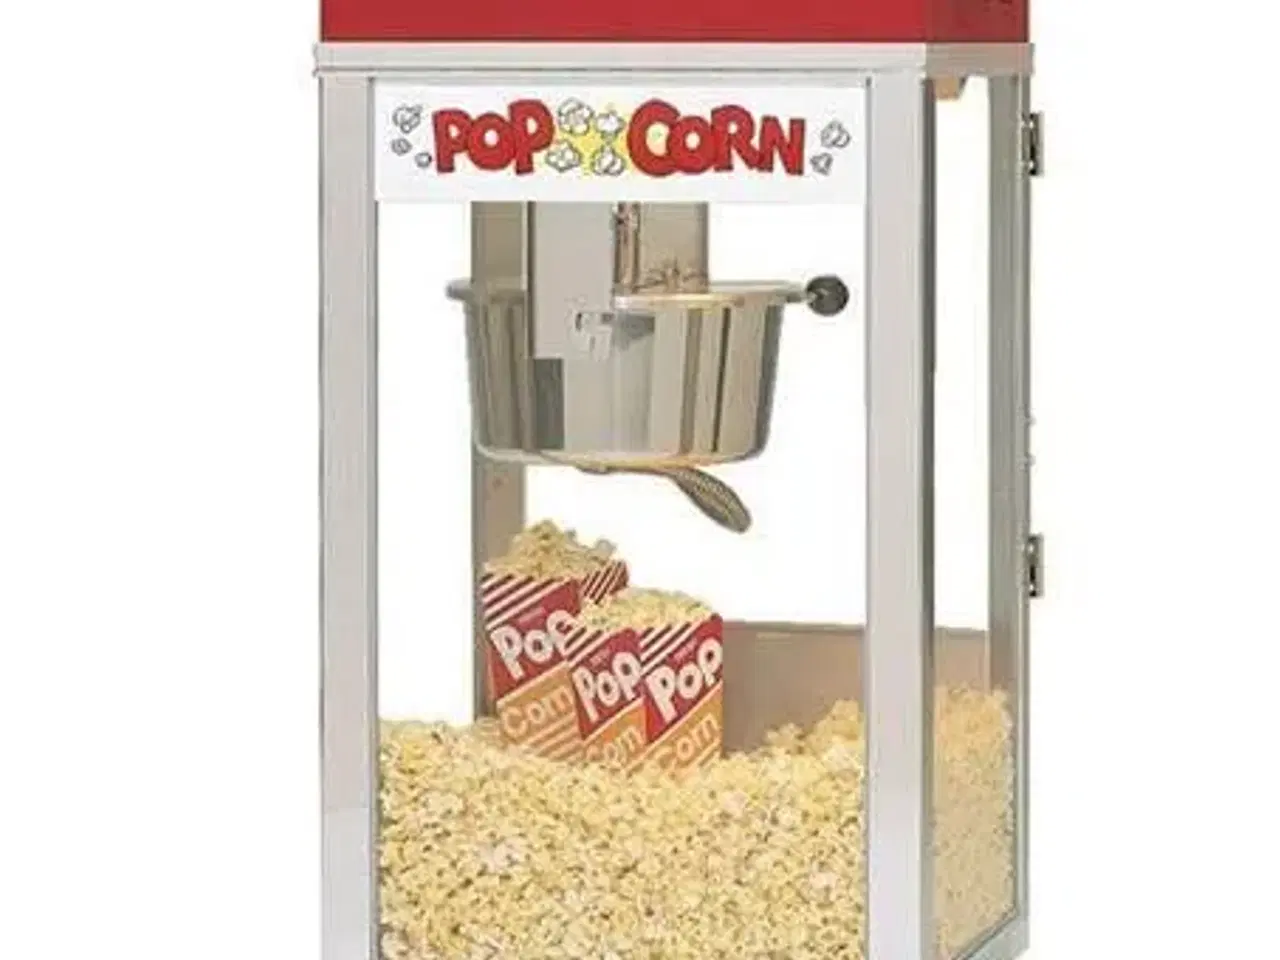 Billede 1 - Udlejning af Popcornmaskine